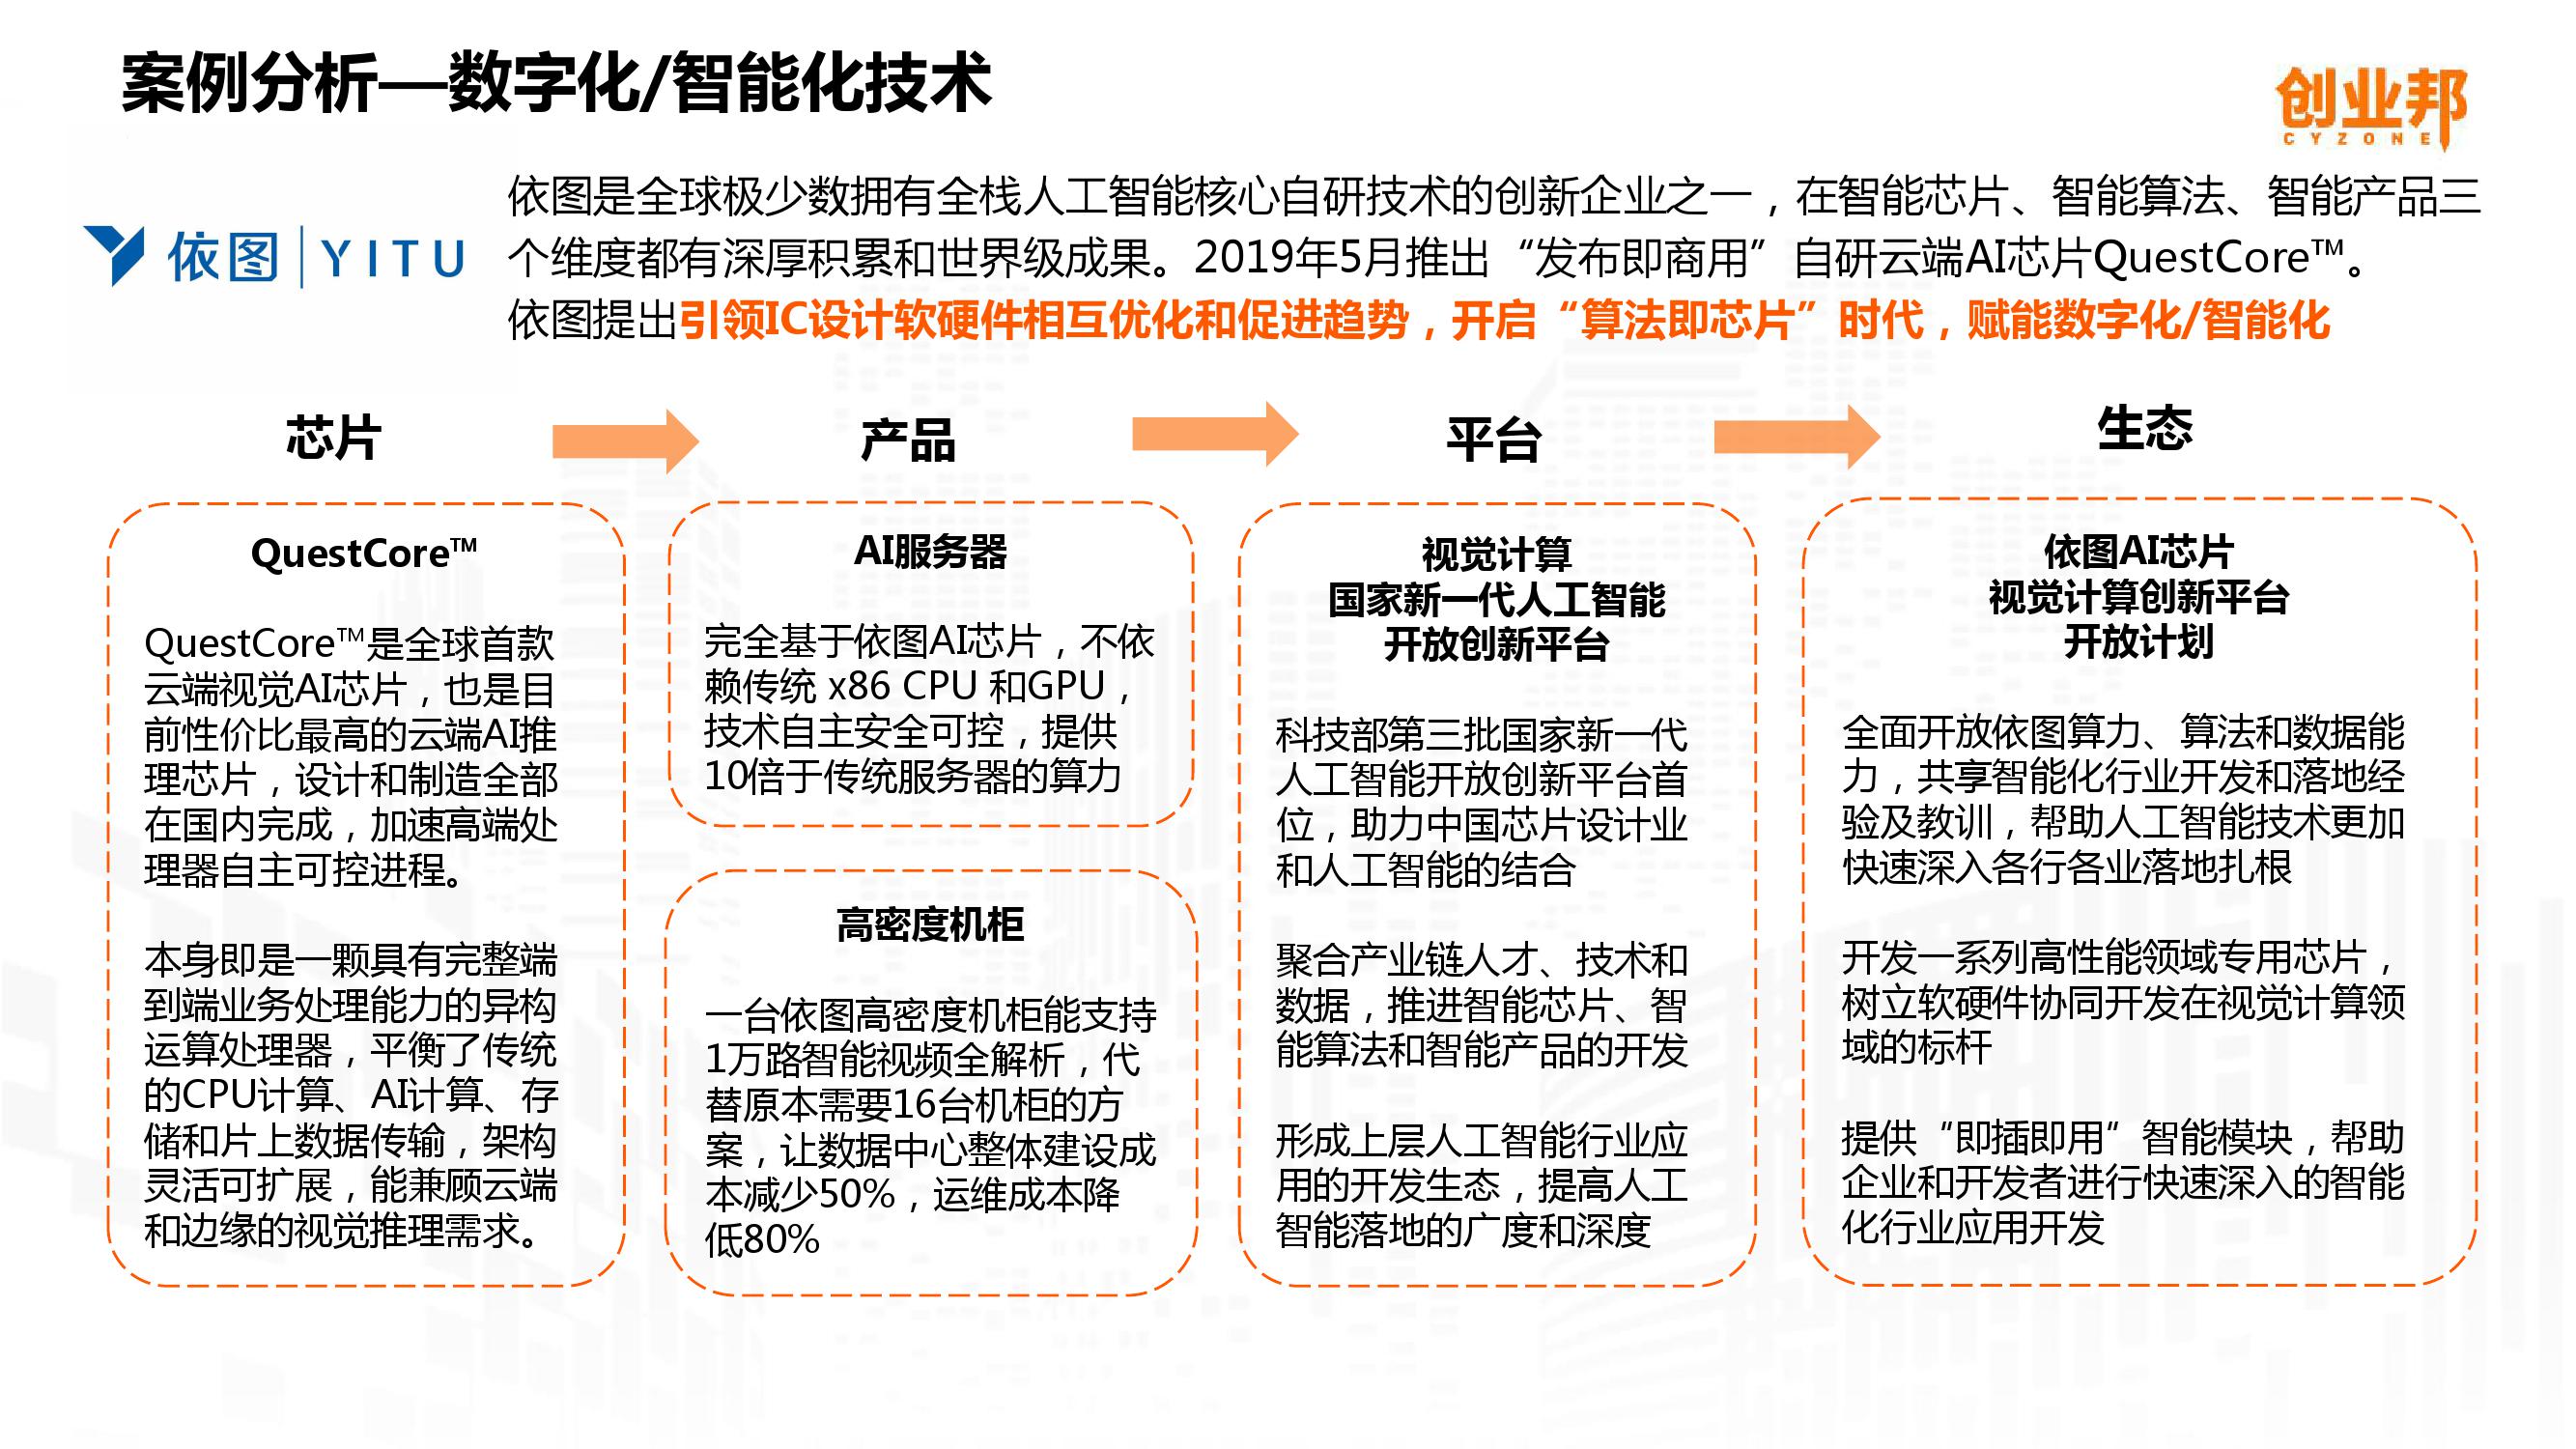 2019中国企业数字化智能化研究报告_000034-3